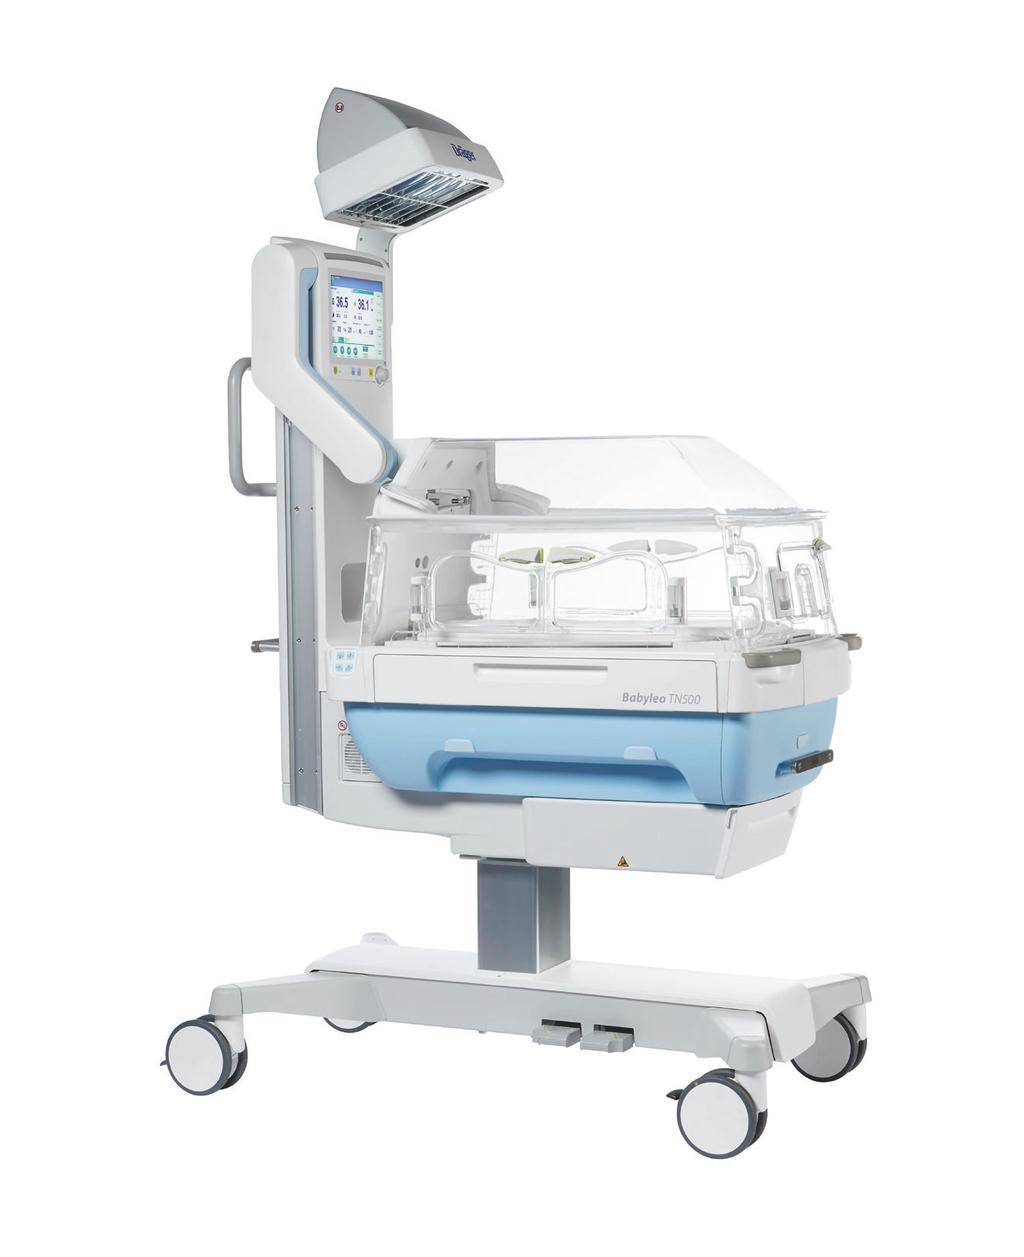 Dräger Babyleo TN500 IncuWarmer D-43871-2015 Babyleo TN500 to pierwszy IncuWarmer ﬁrmy Dräger, który zapewnia optymalną termoregulację dla noworodków, pracując jako inkubator otwarty i zamknięty oraz